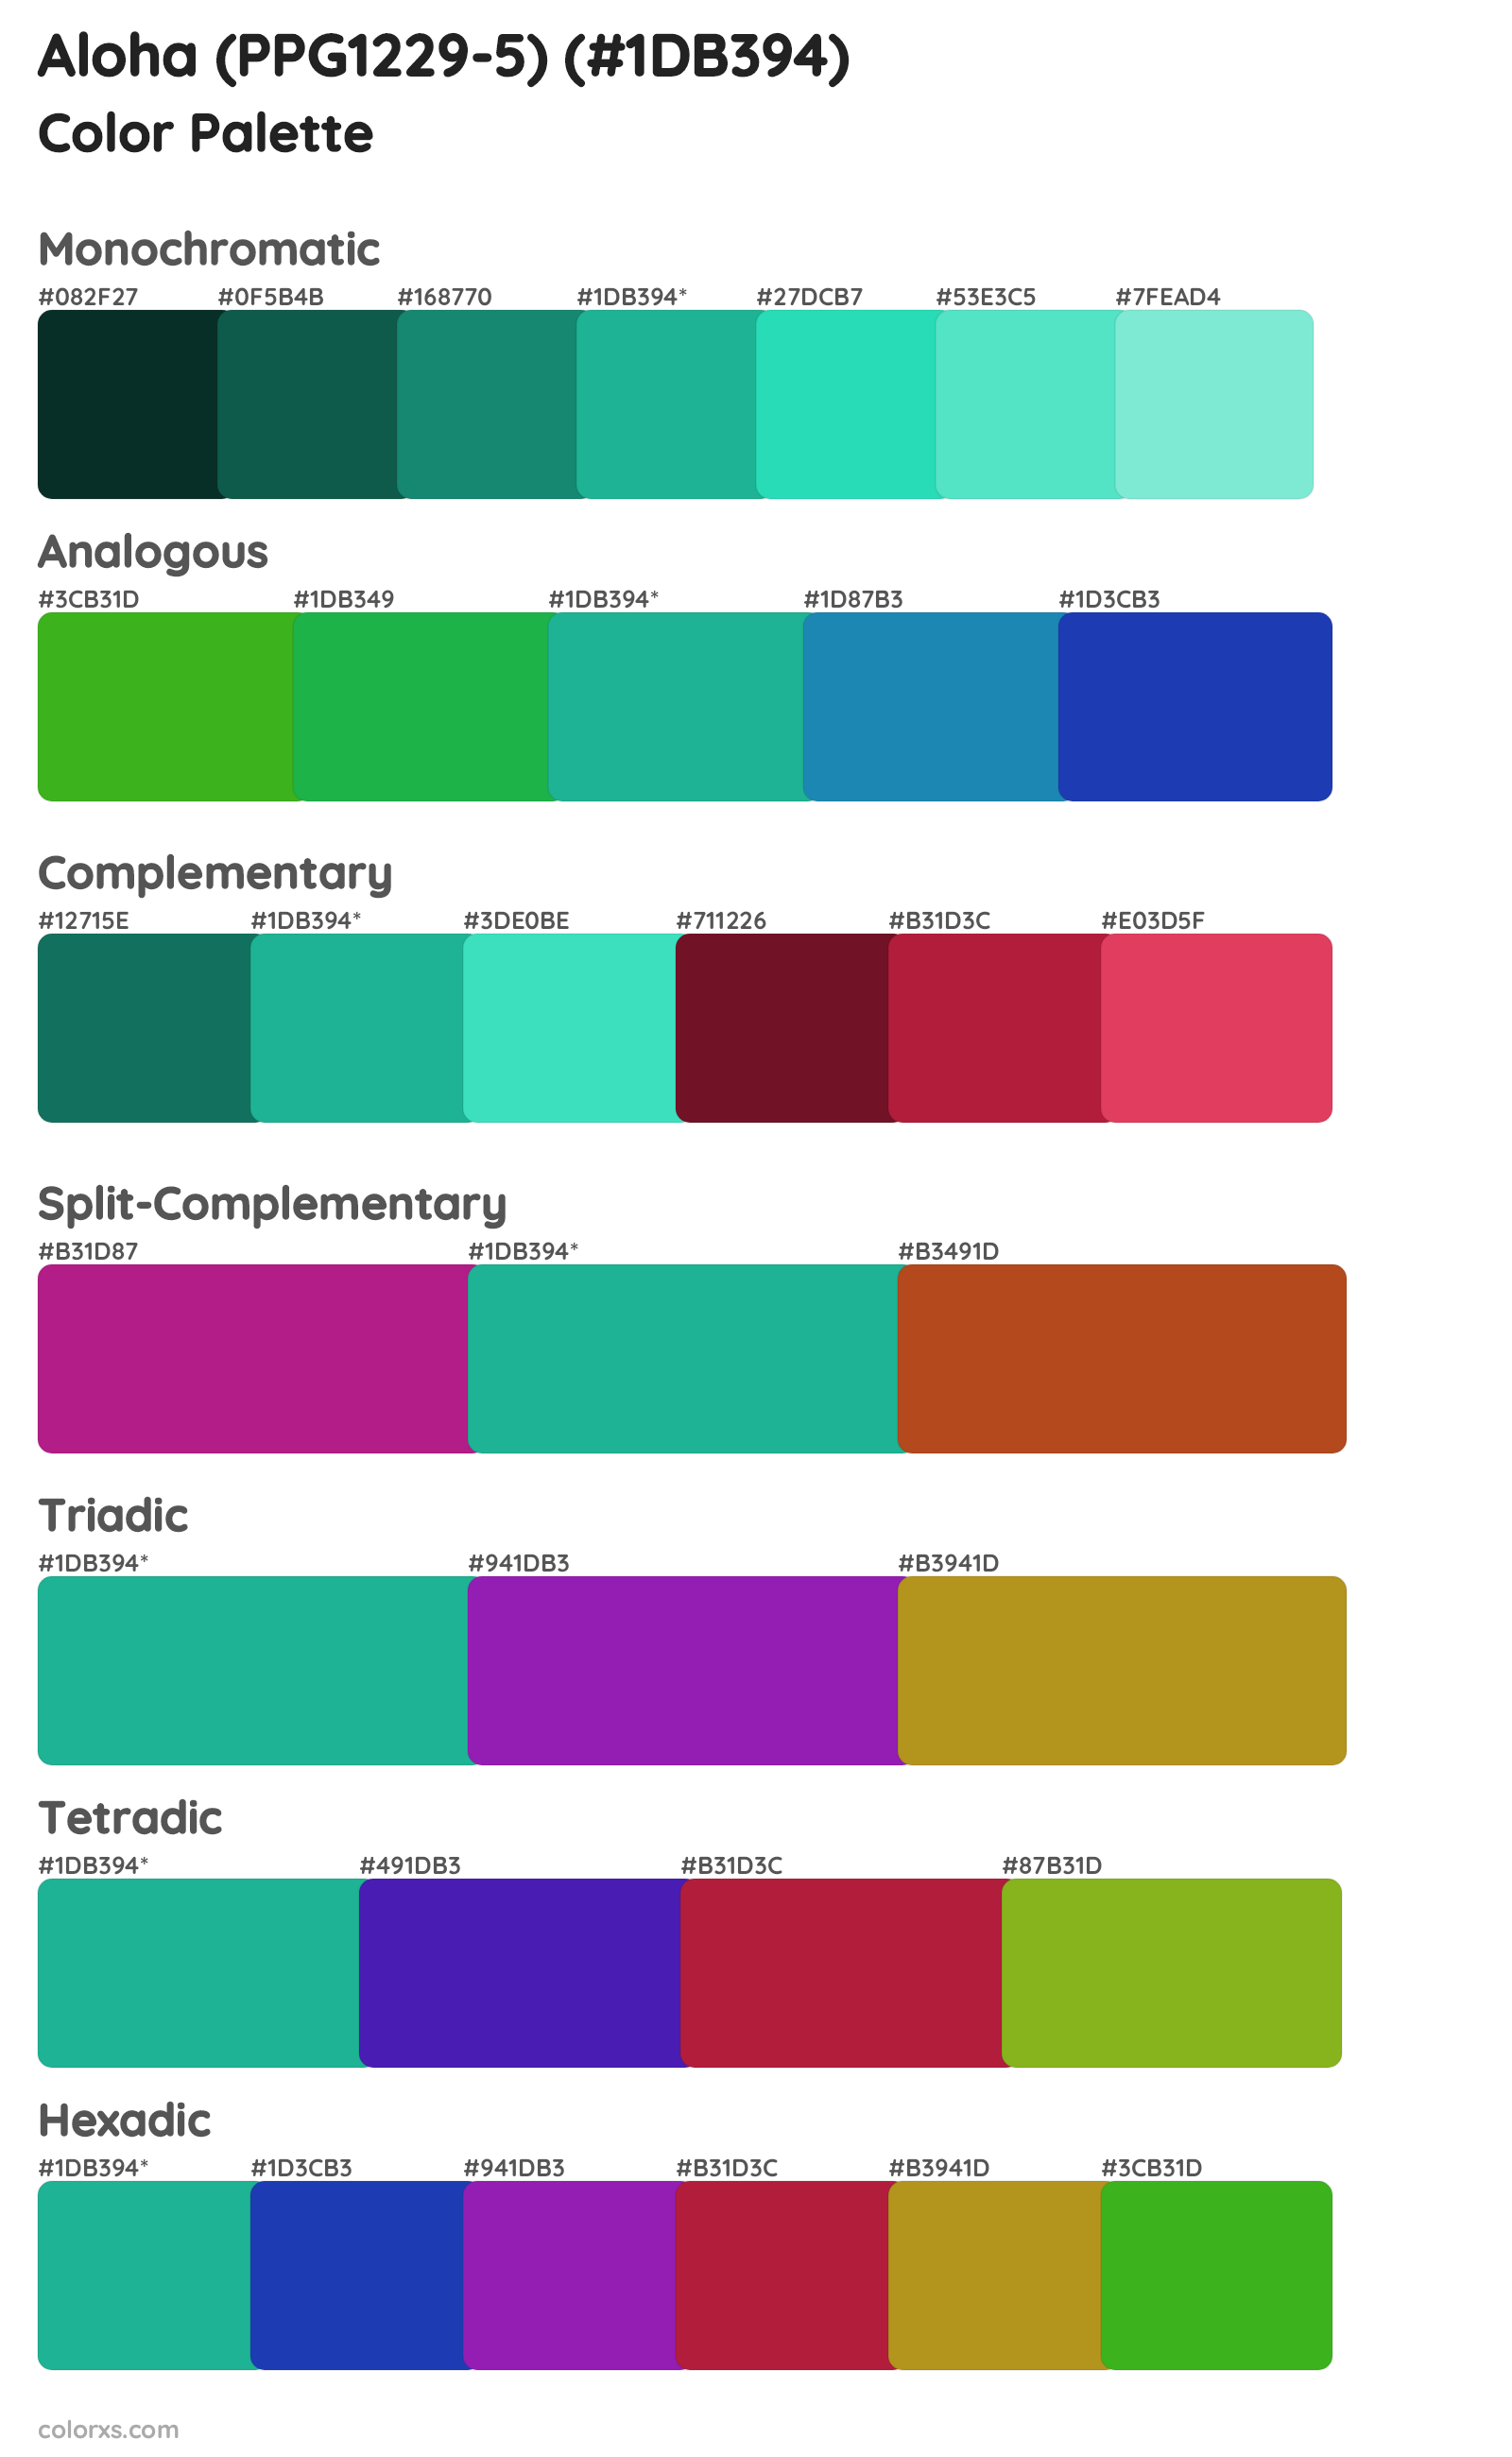 Aloha (PPG1229-5) Color Scheme Palettes